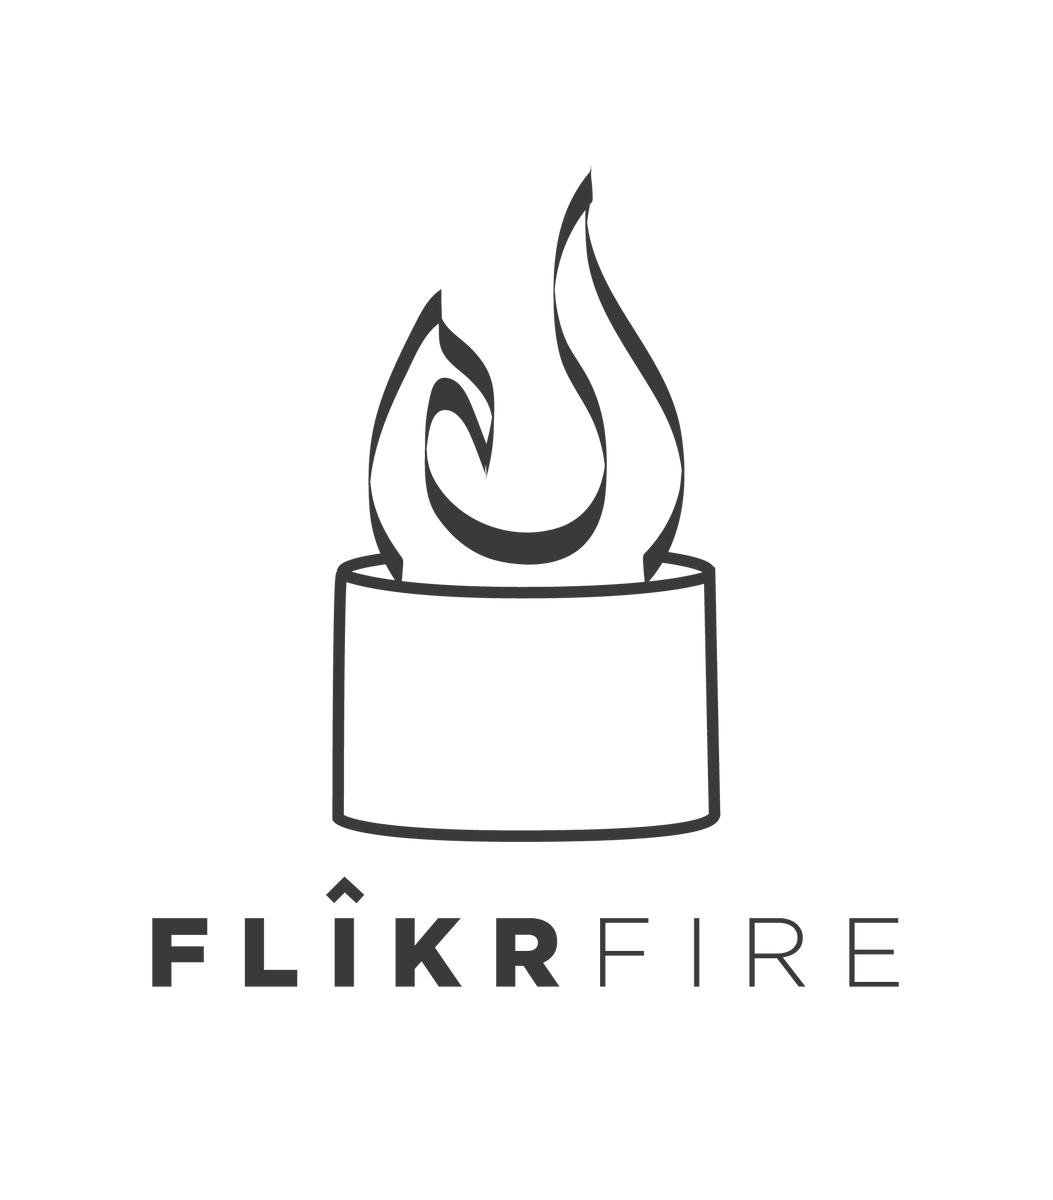 www.flikrfireplace.com